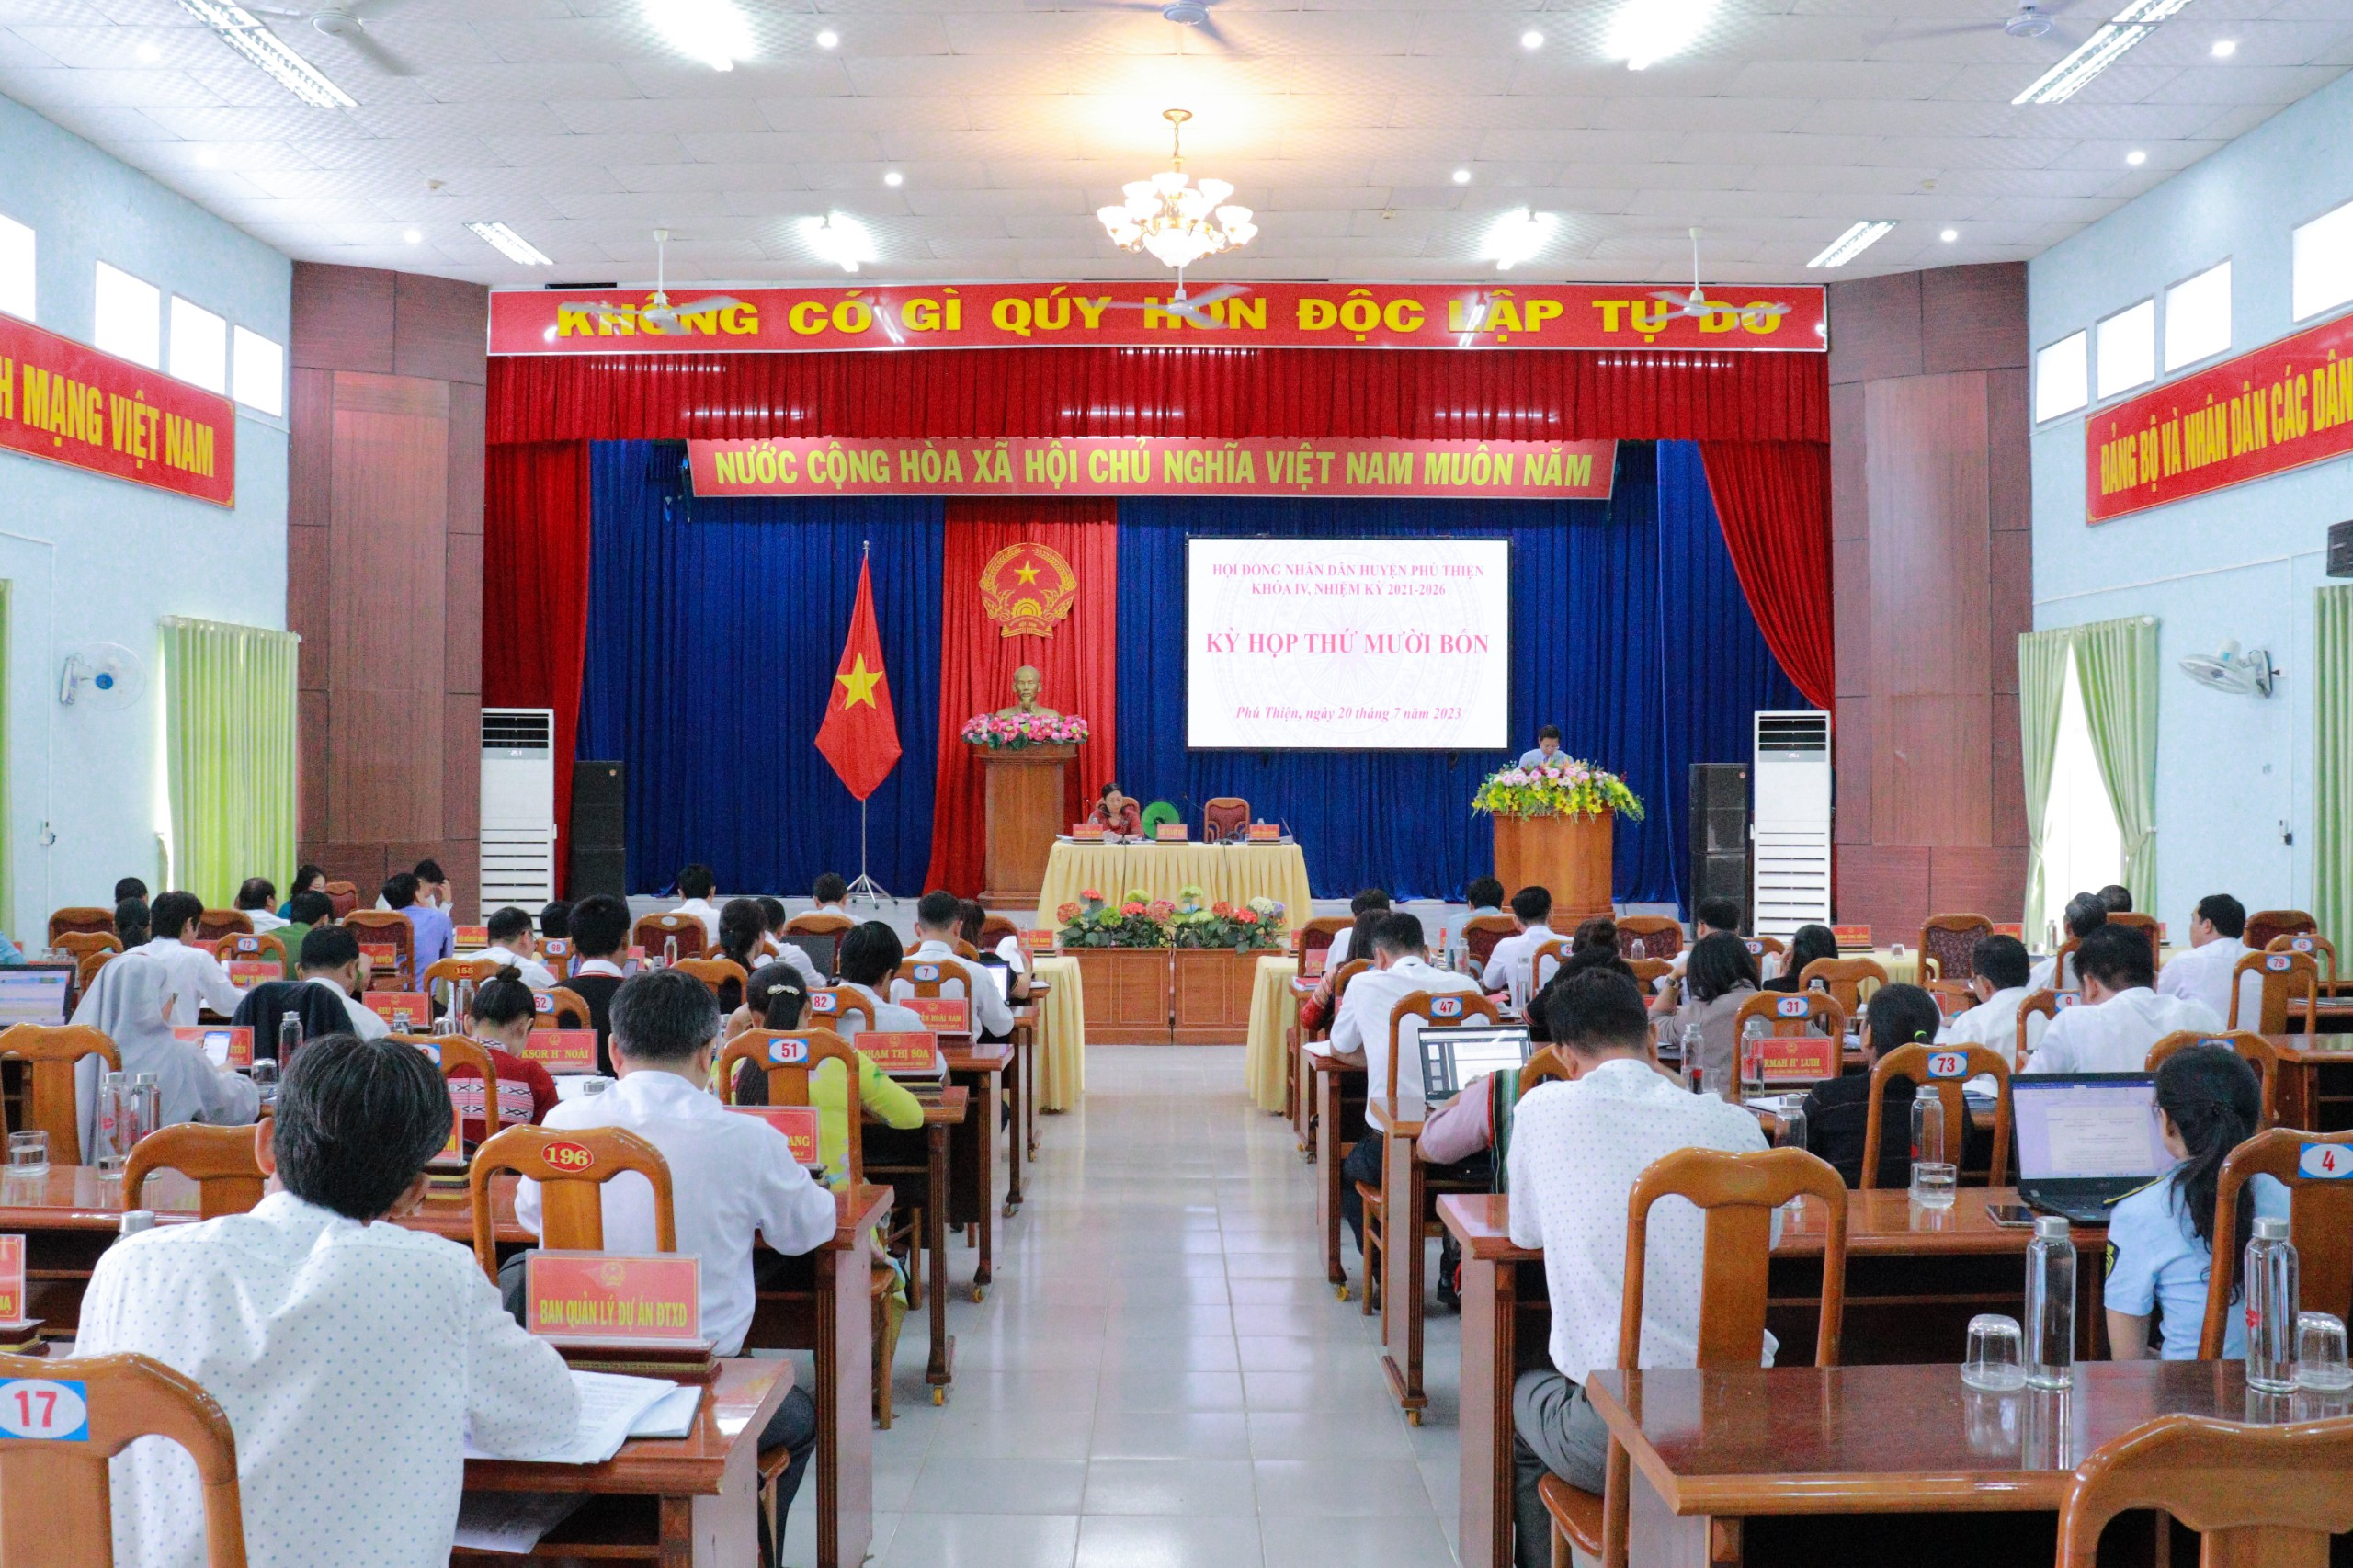 Article HĐND huyện Phú Thiện tổ chức kỳ họp thứ Mười bốn, HĐND huyện khóa IV, nhiệm kỳ 2021 -2026